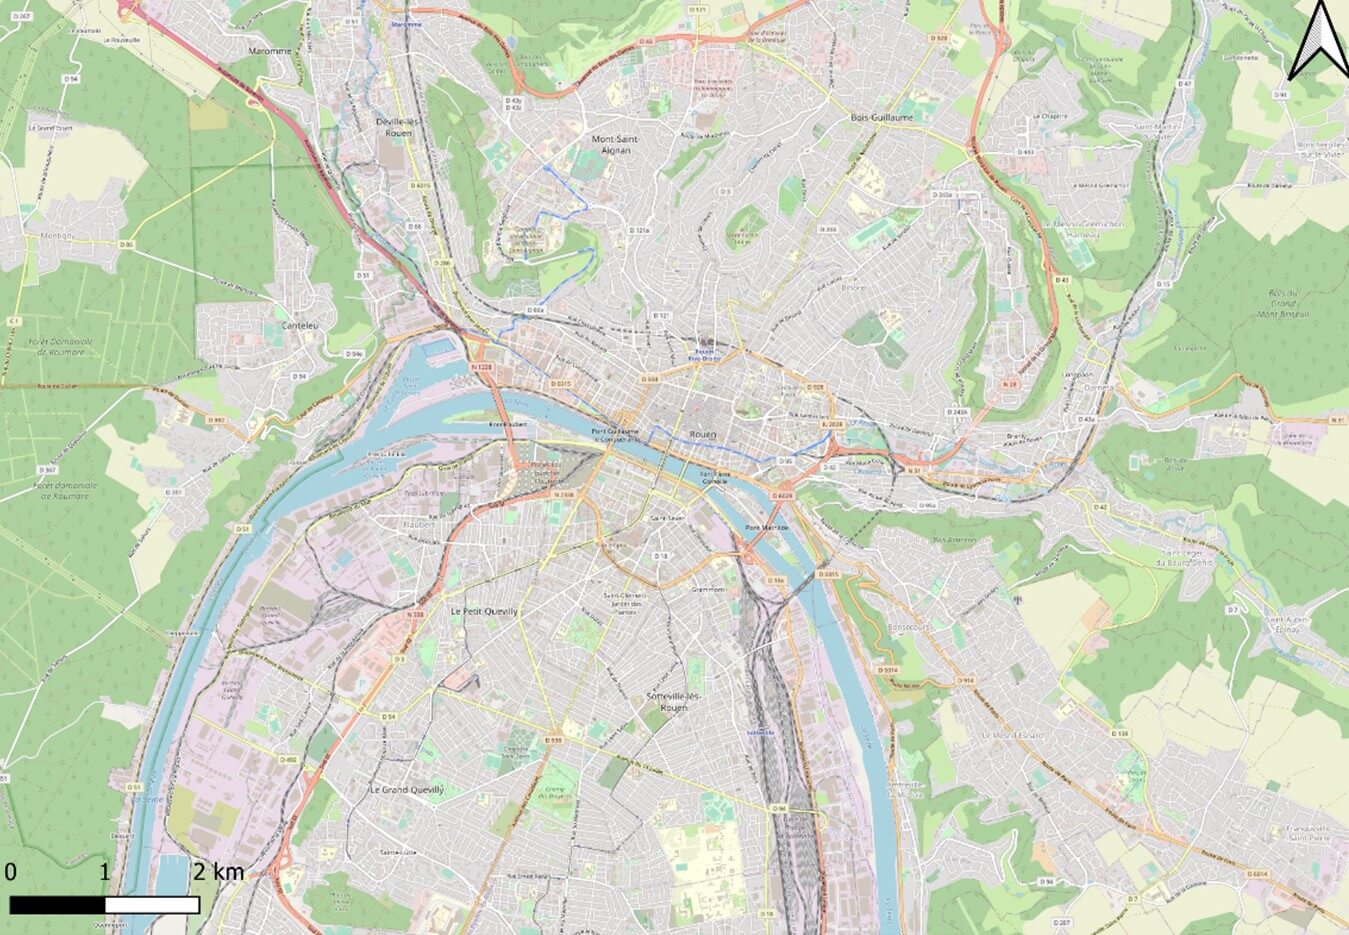 La ville de Rouen et ses alentours, conception Julien Magana 2022